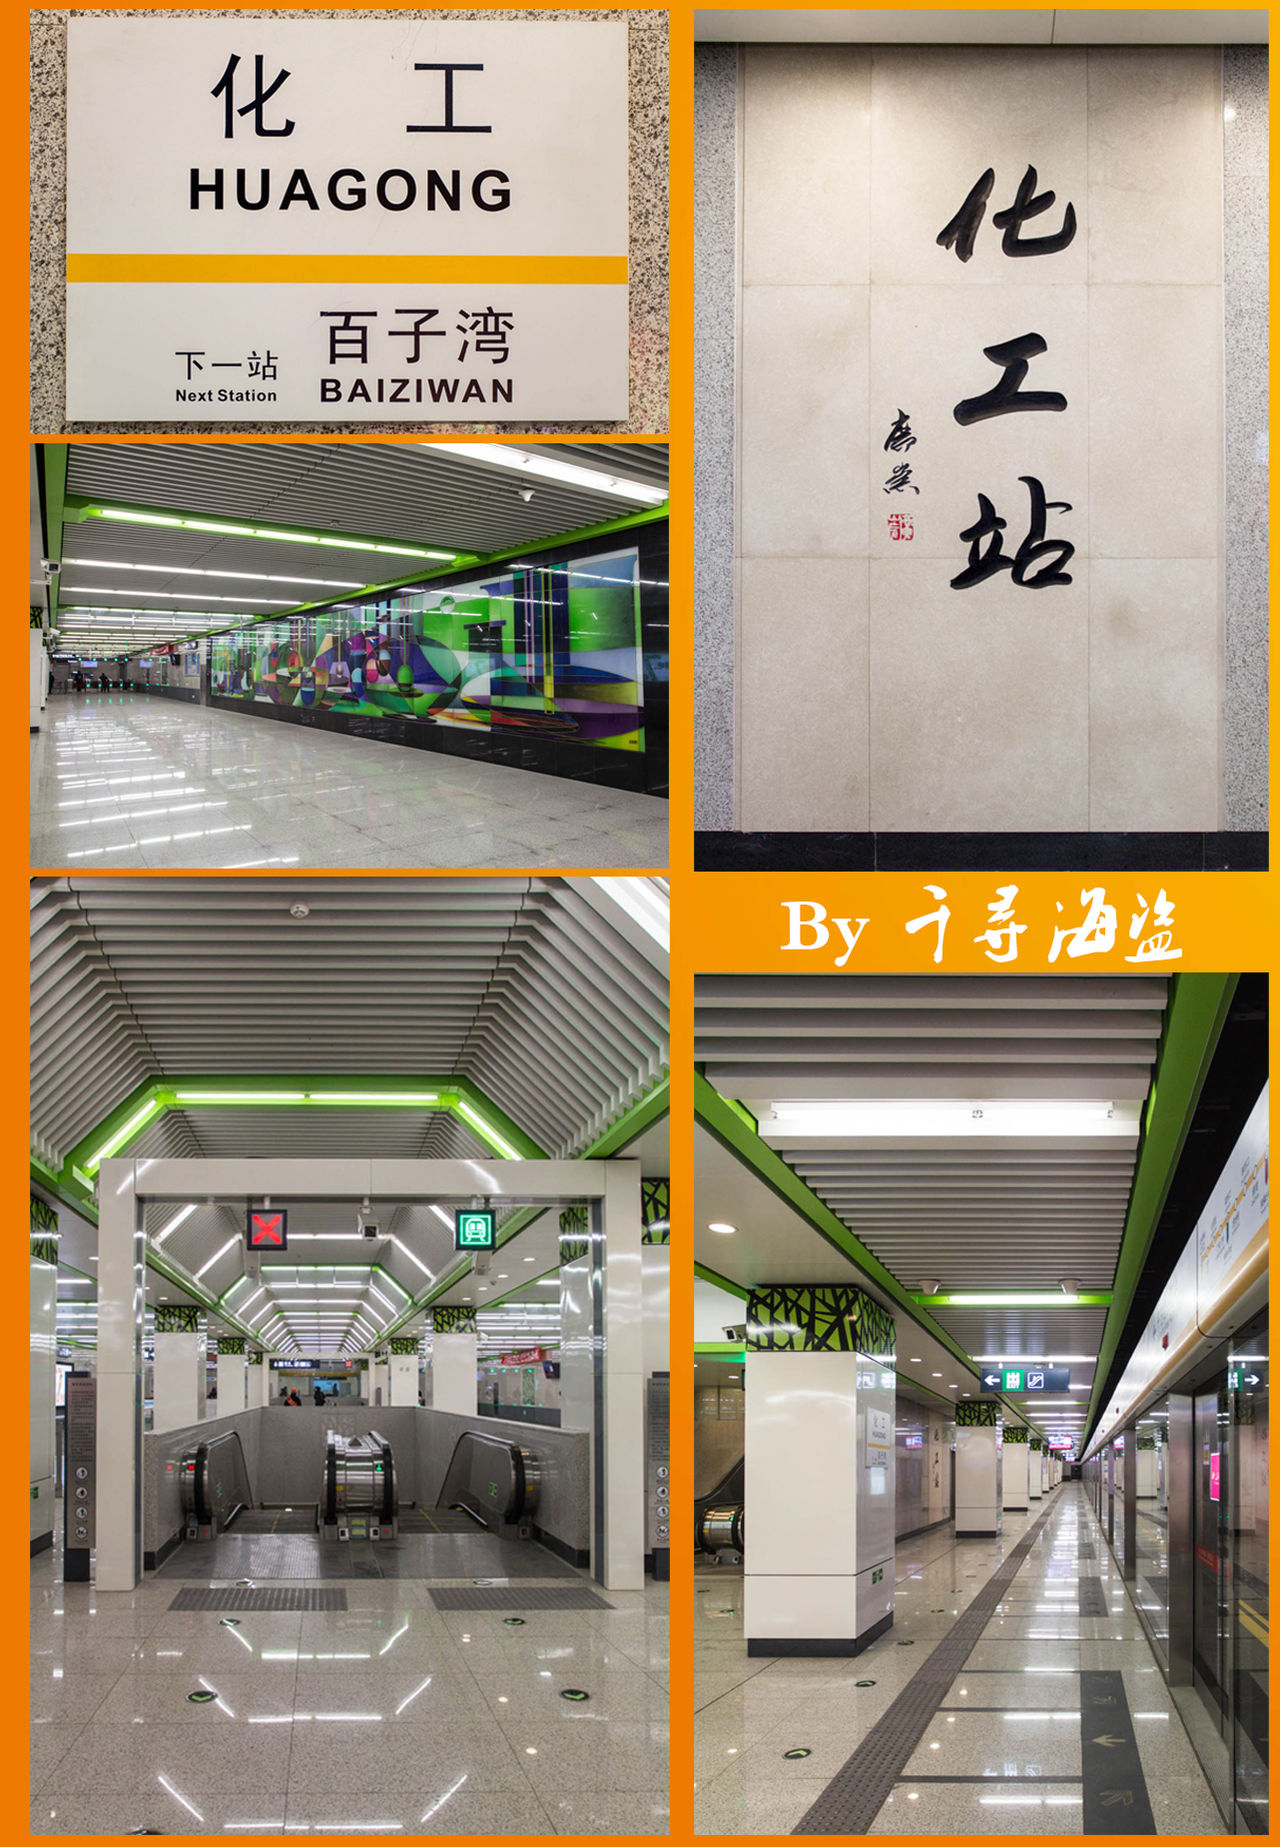 化工站(北京捷運7號線車站)